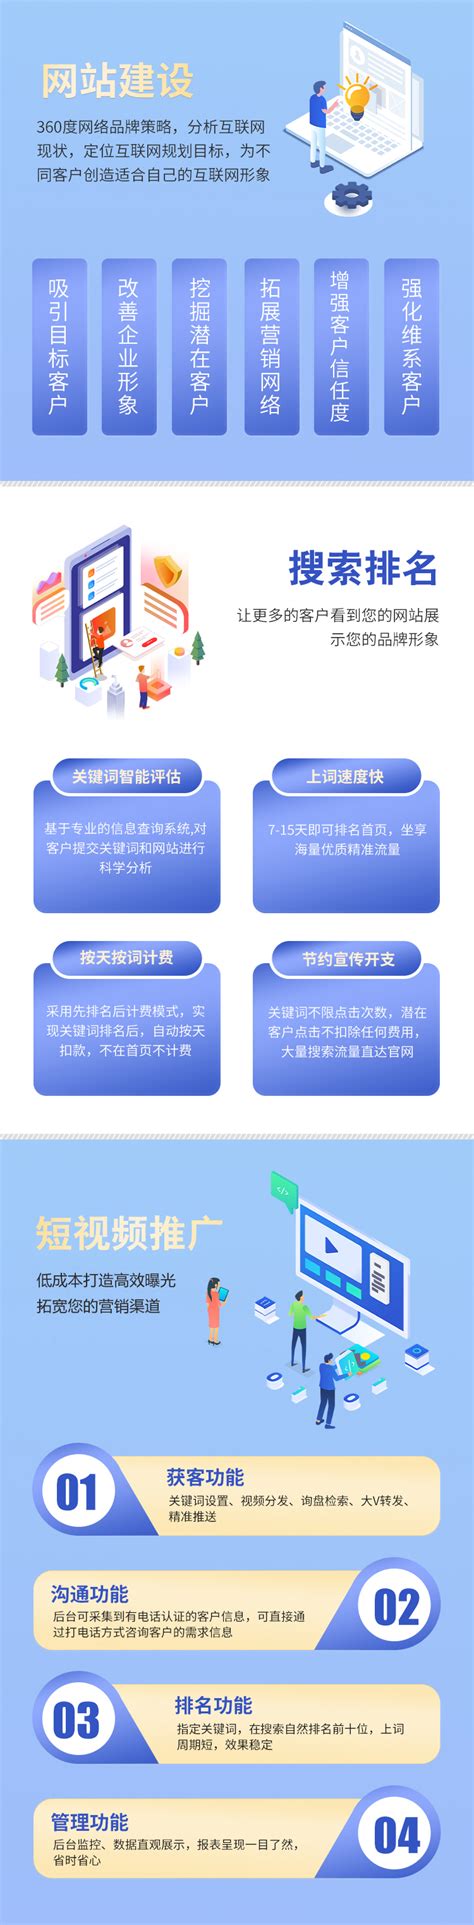 重庆网站建设平台分析